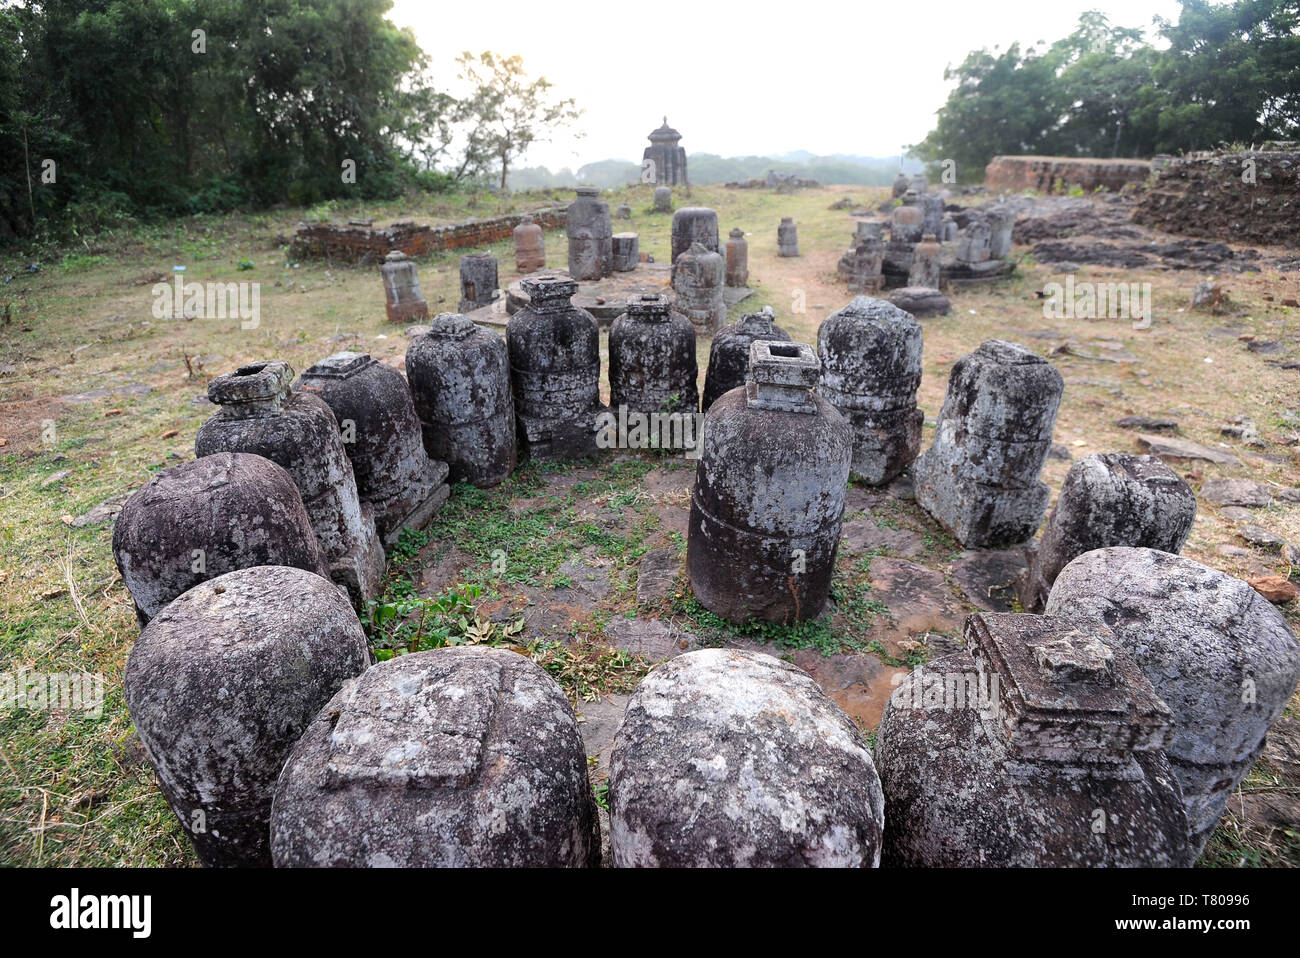 Pierre bouddhistes stupas trouvés sur l'Ratnagiri site archéologique de l'ancienne zone bouddhiste d'Odisha, Inde, Asie Banque D'Images